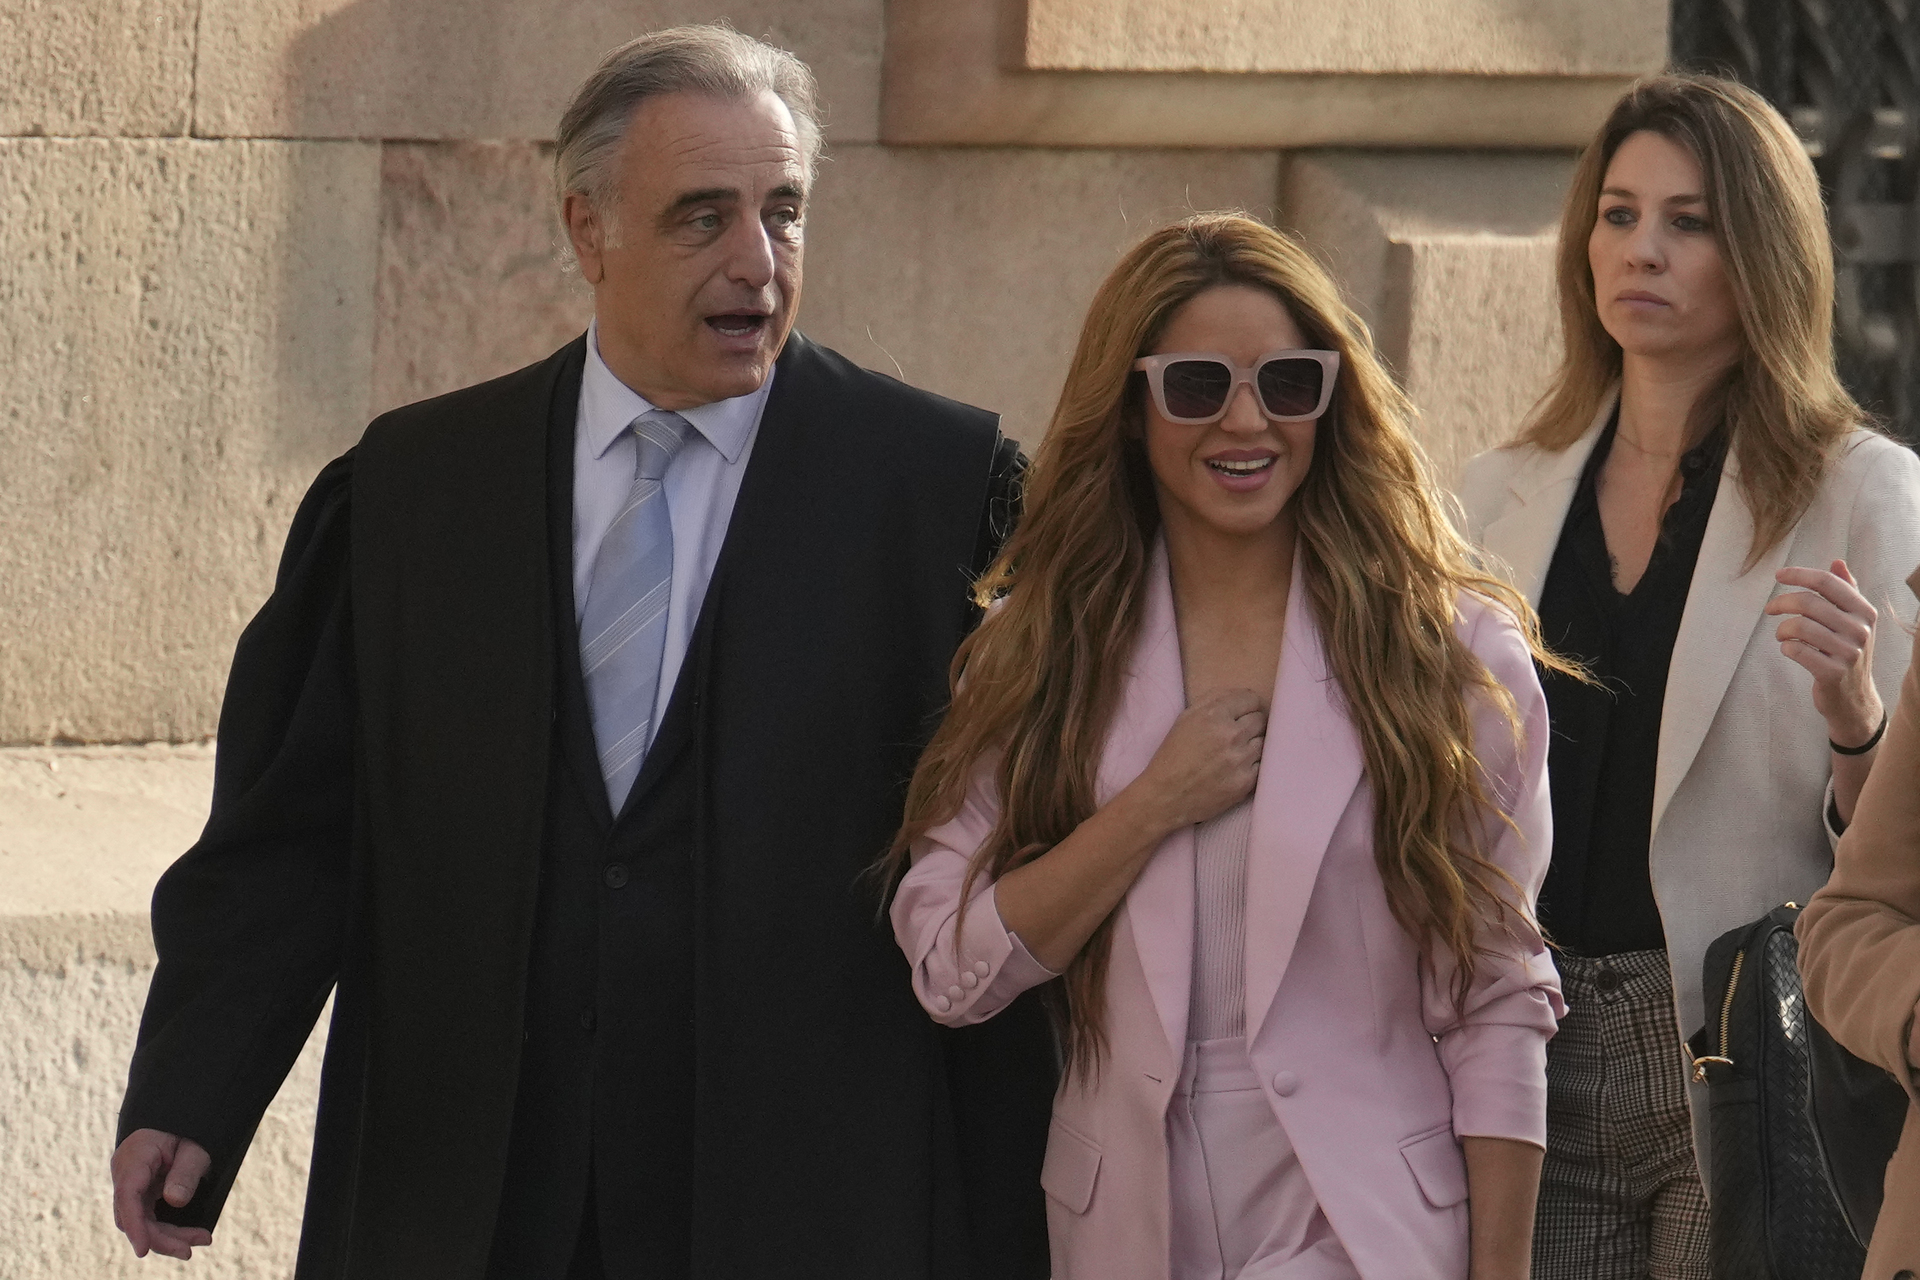  La cantante Shakira a su llegada a la Audiencia de Barcelona donde se sienta hoy en el banquillo, acusada de defraudar 14,5 millones a Hacienda entre 2012 y 2014, por lo que la Fiscalía le pide una condena de ocho años y dos meses de cárcel, con la puerta abierta a un pacto. EFE/Enric Fontcuberta